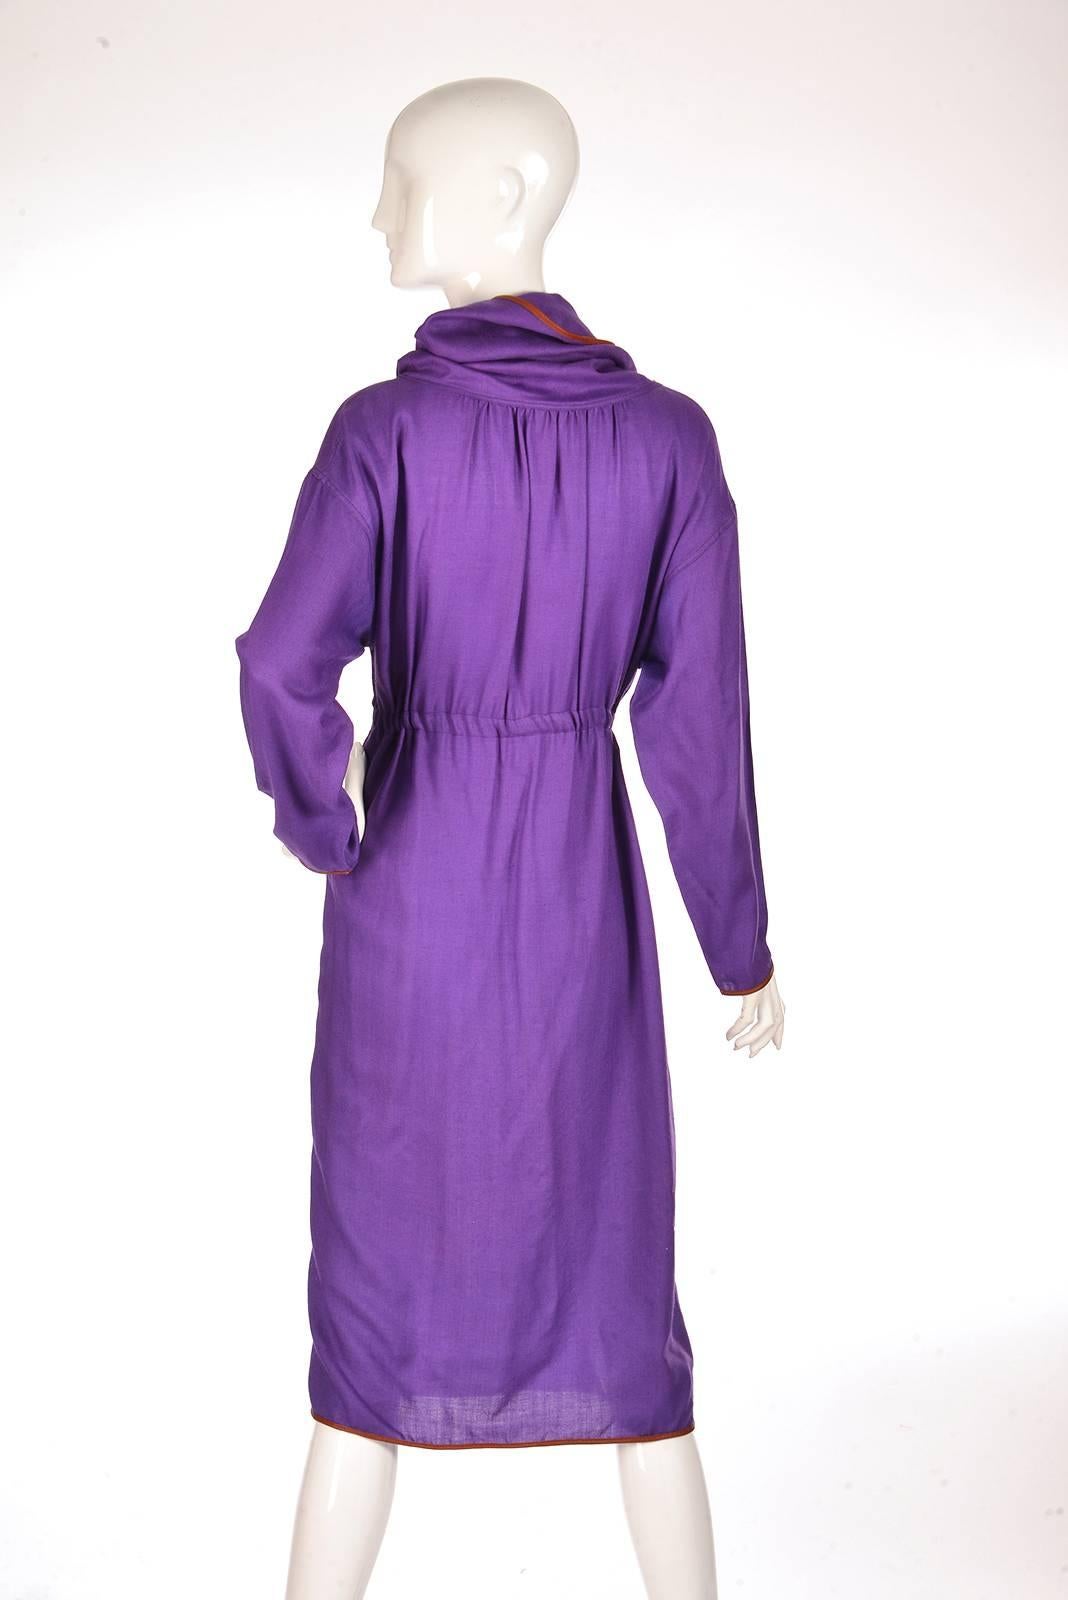 Late 20th Century Geoffrey Beene Purple Hooded Wool Dress  For Sale 2